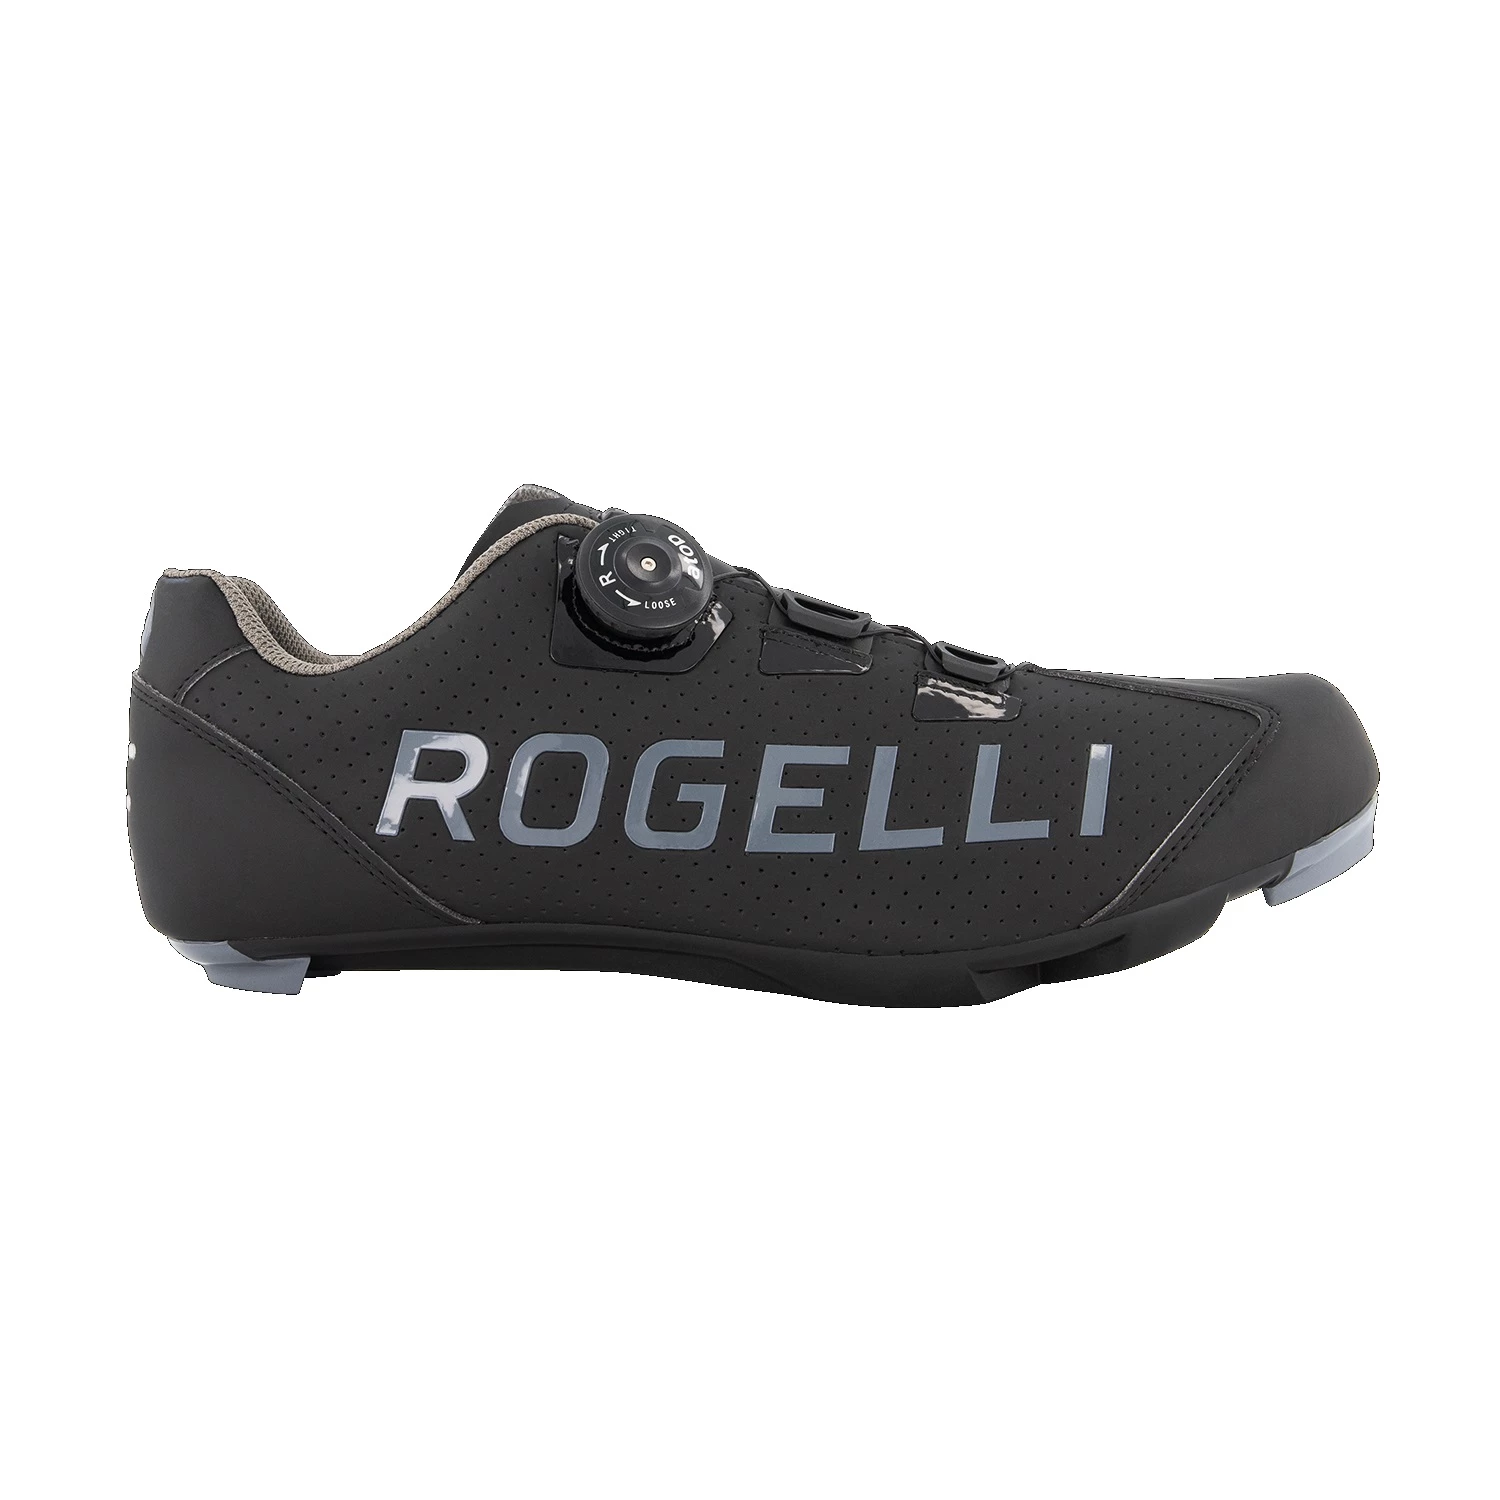 Rogelli Race Voor SPD-SL Pedaal wielren schoenen